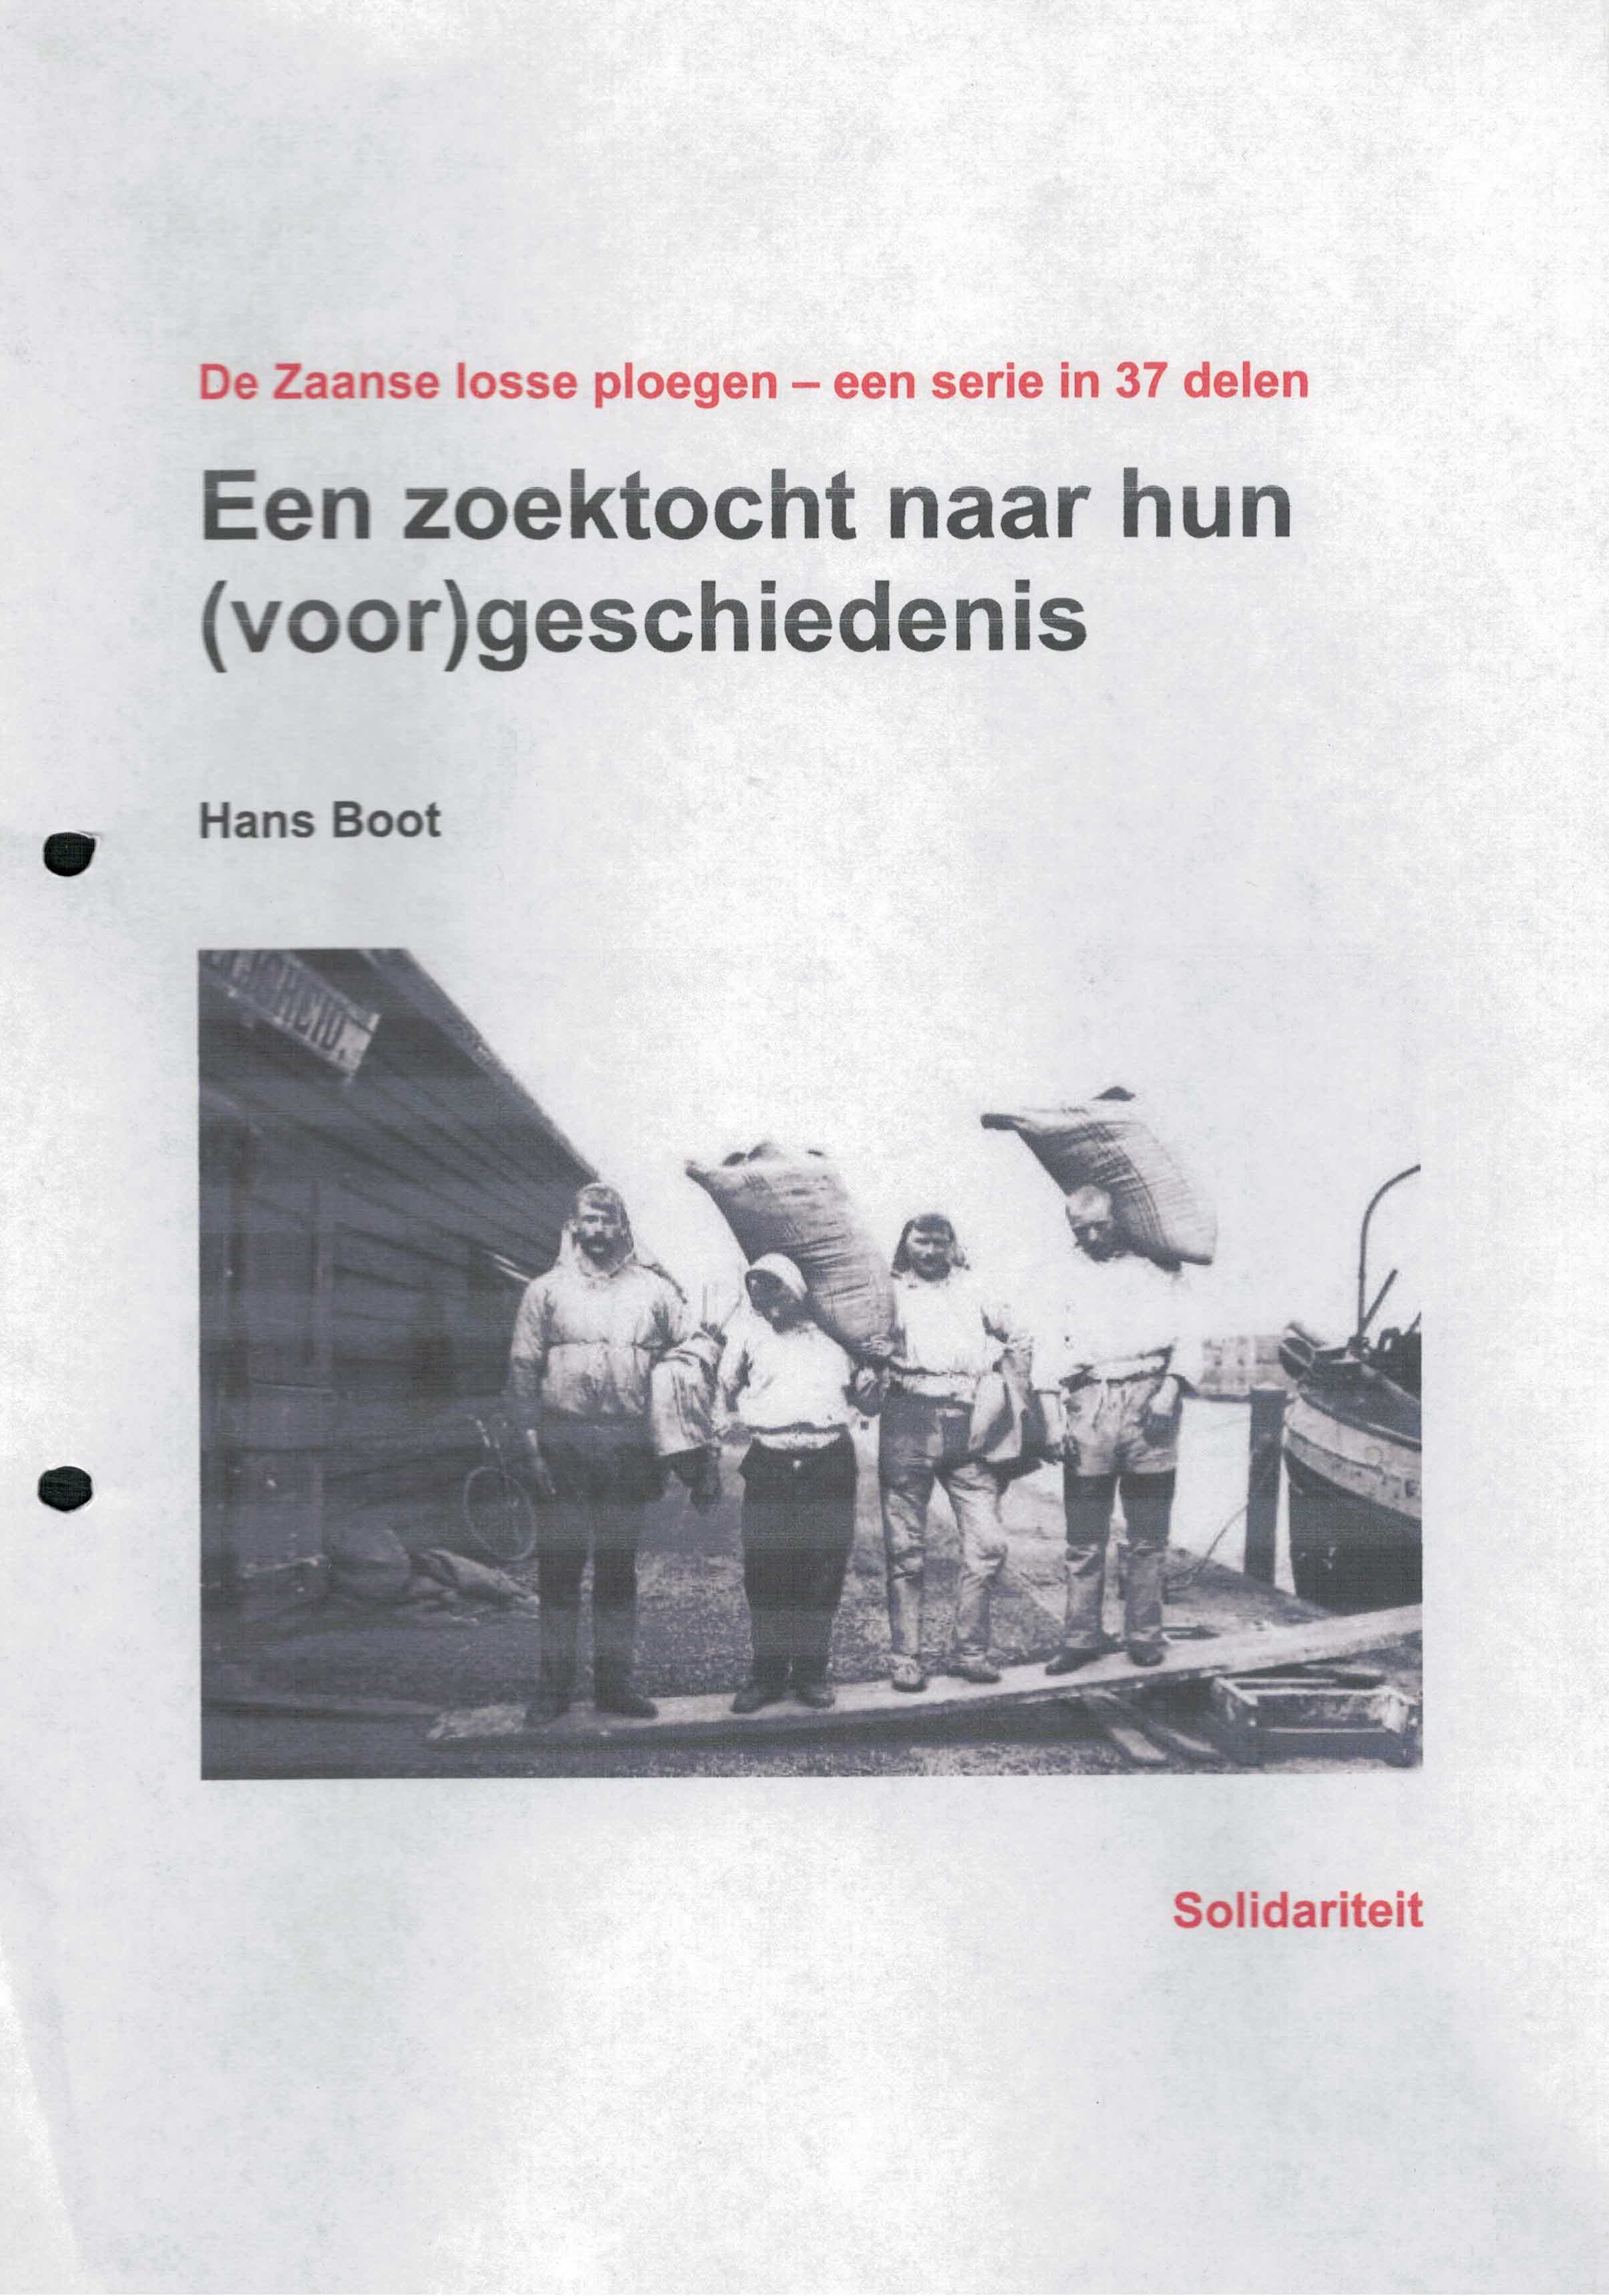 Boot, Hans - De Zaanse losse ploegen serie in 37 delen een zoektocht naar hun (voor)geschiedenis.